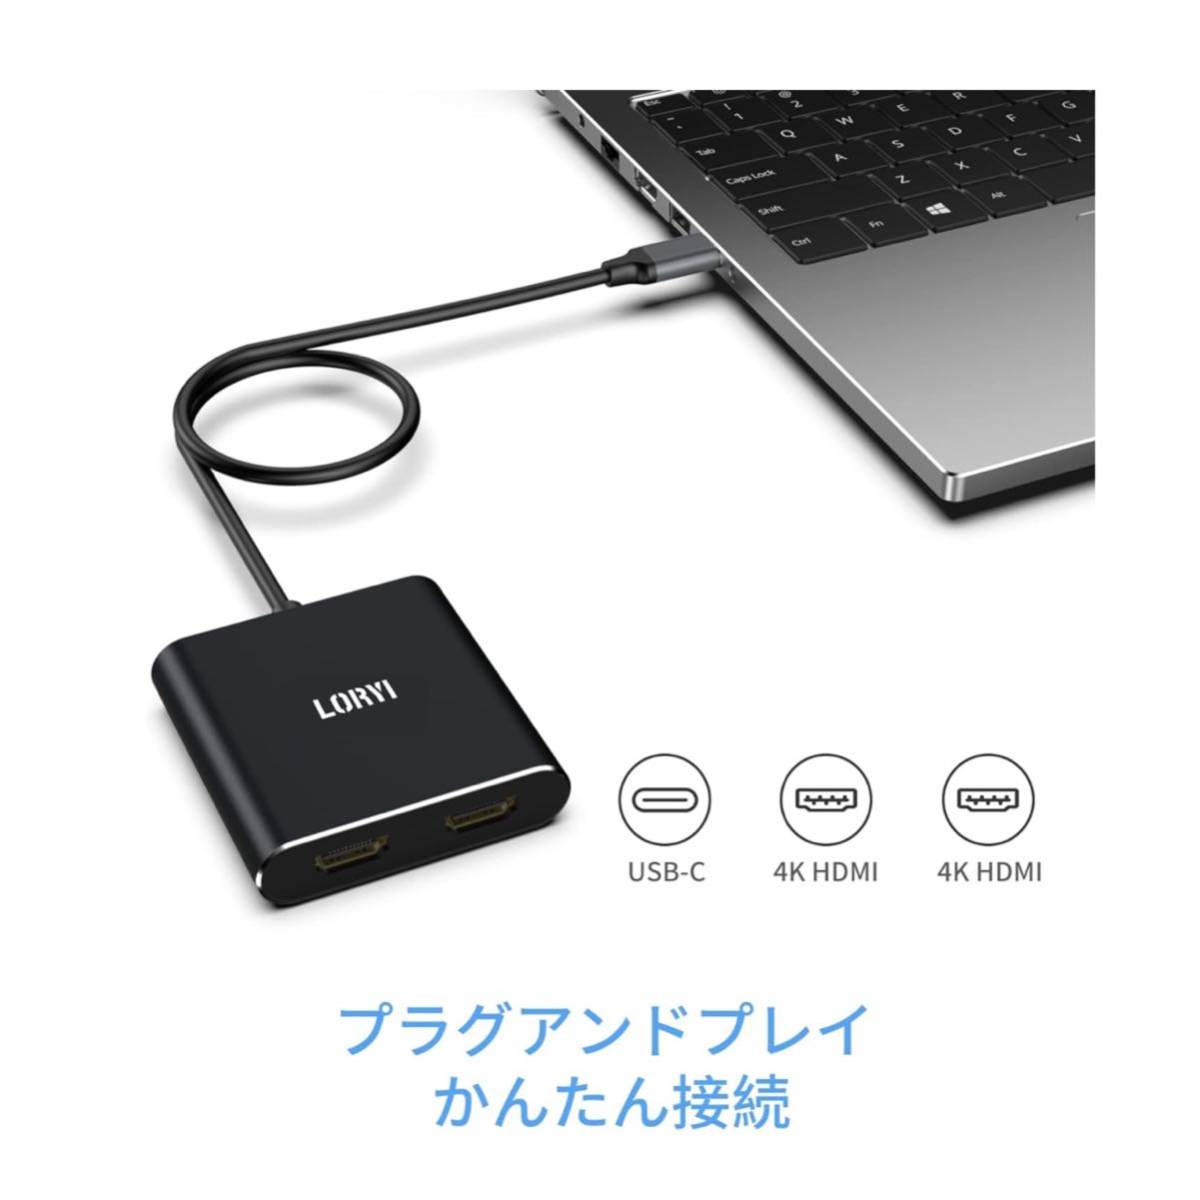 【開封のみ】Loryi★ USB C HDMI 変換アダプター デュアル HDMI 分配器 拡張モード対応 HDMI 拡張 (USB-C to デュアルHDMIアダプター)の画像7